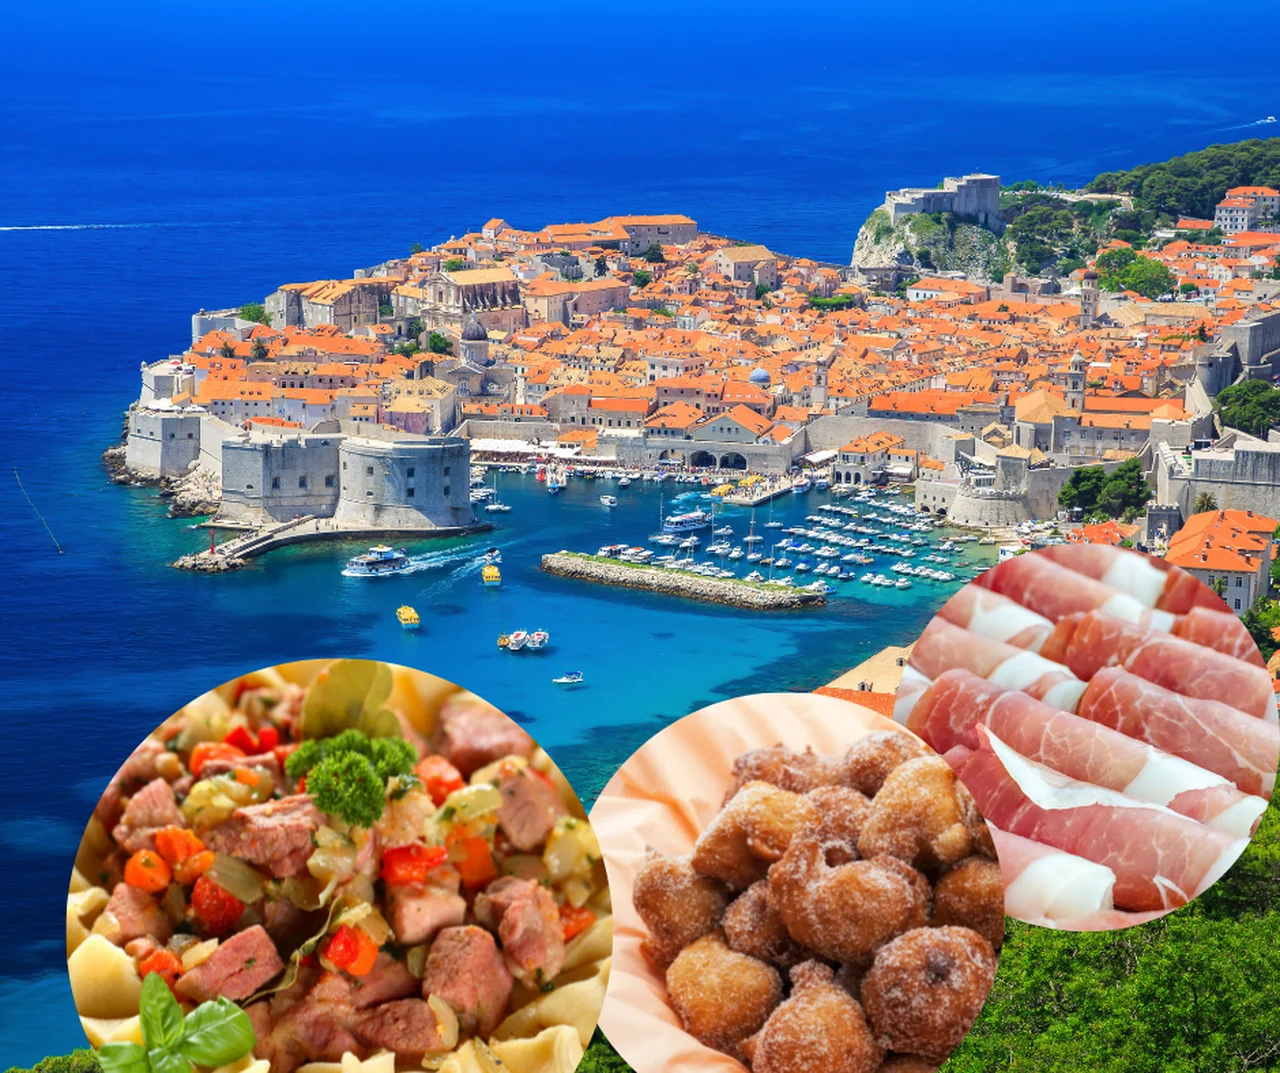 Co warto spróbować w Chorwacji? 10 najważniejszych potraw